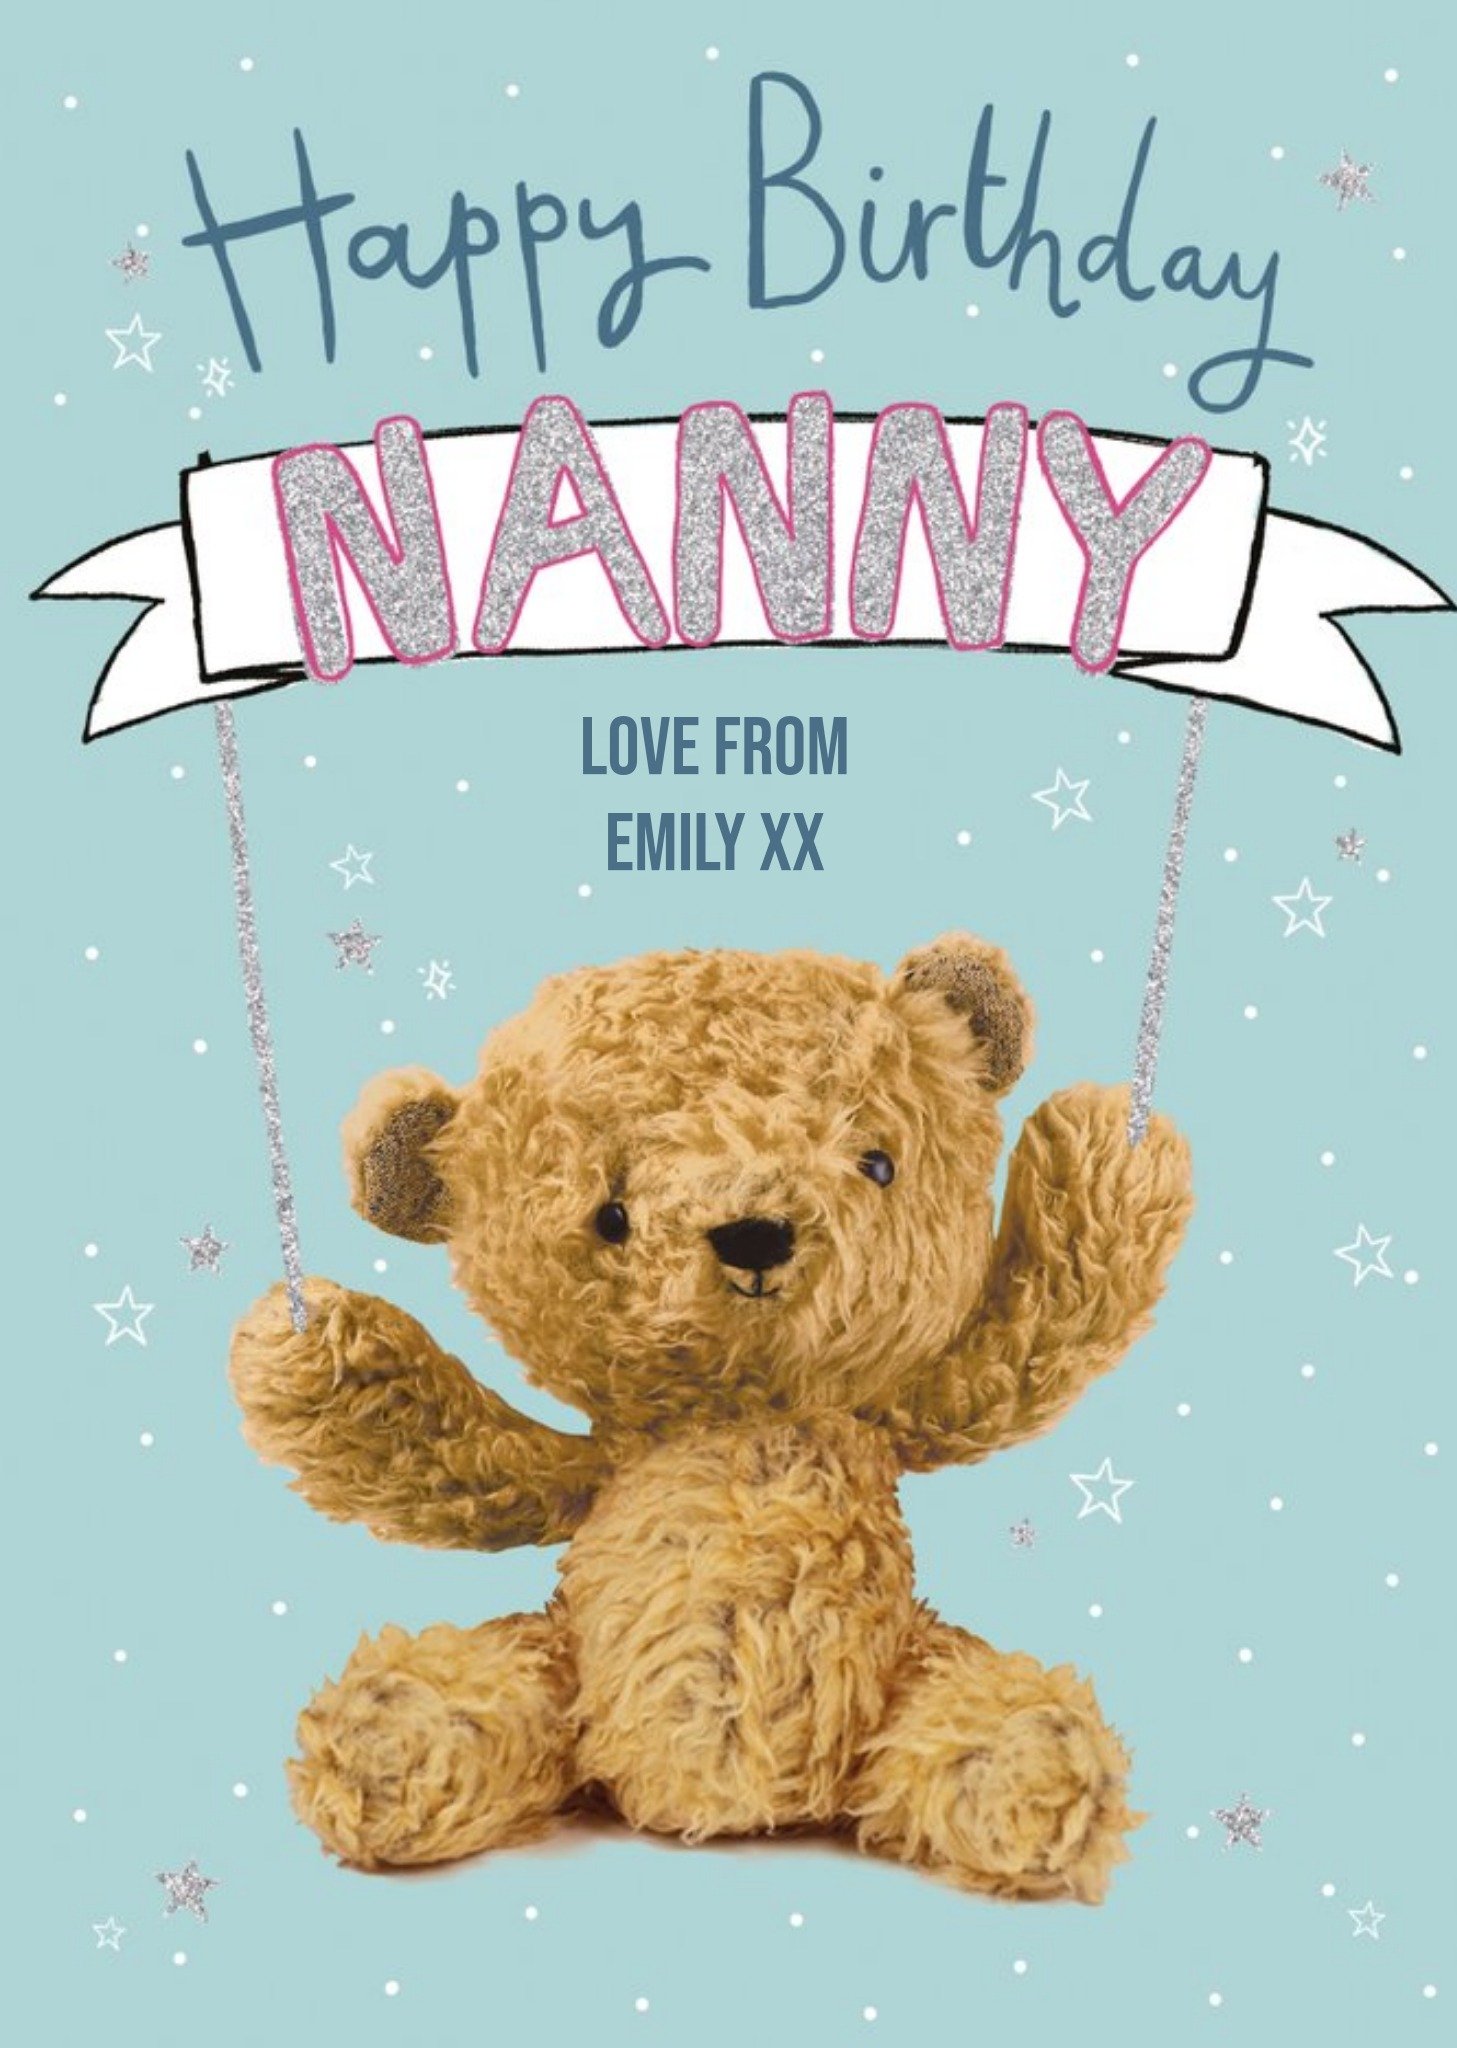 Moonpig Clintons Nanny Cute Teddy Bear Birthday Card Ecard